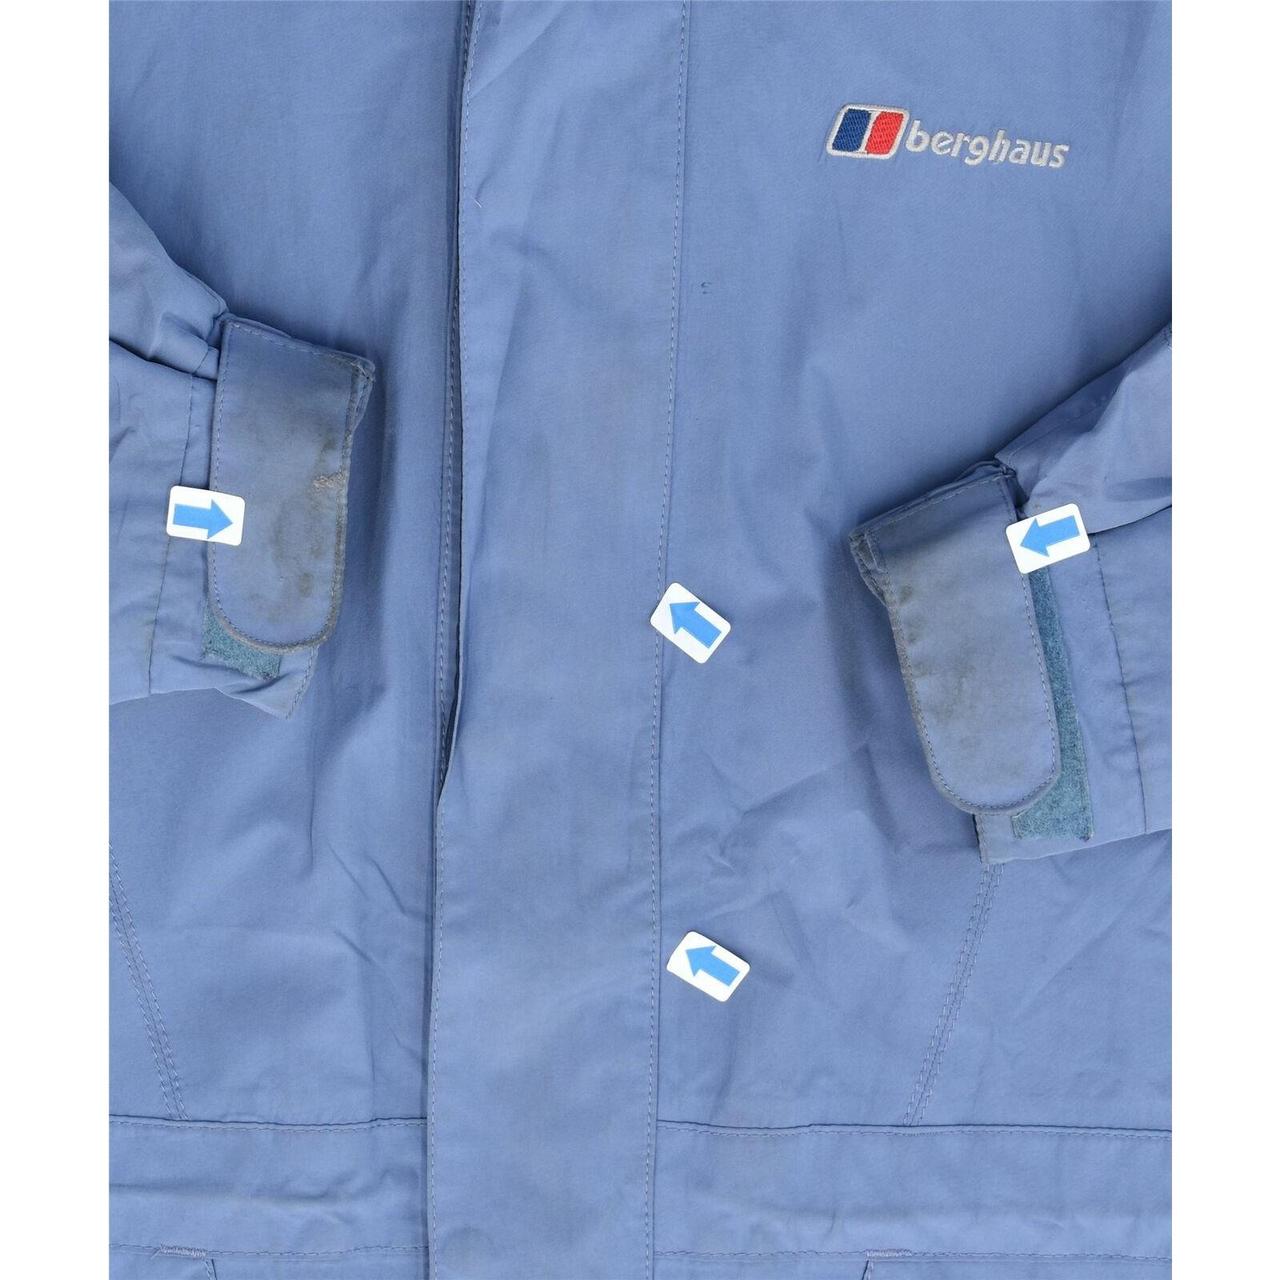 Product Image 3 - BERGHAUS Womens Windbreaker Jacket UK